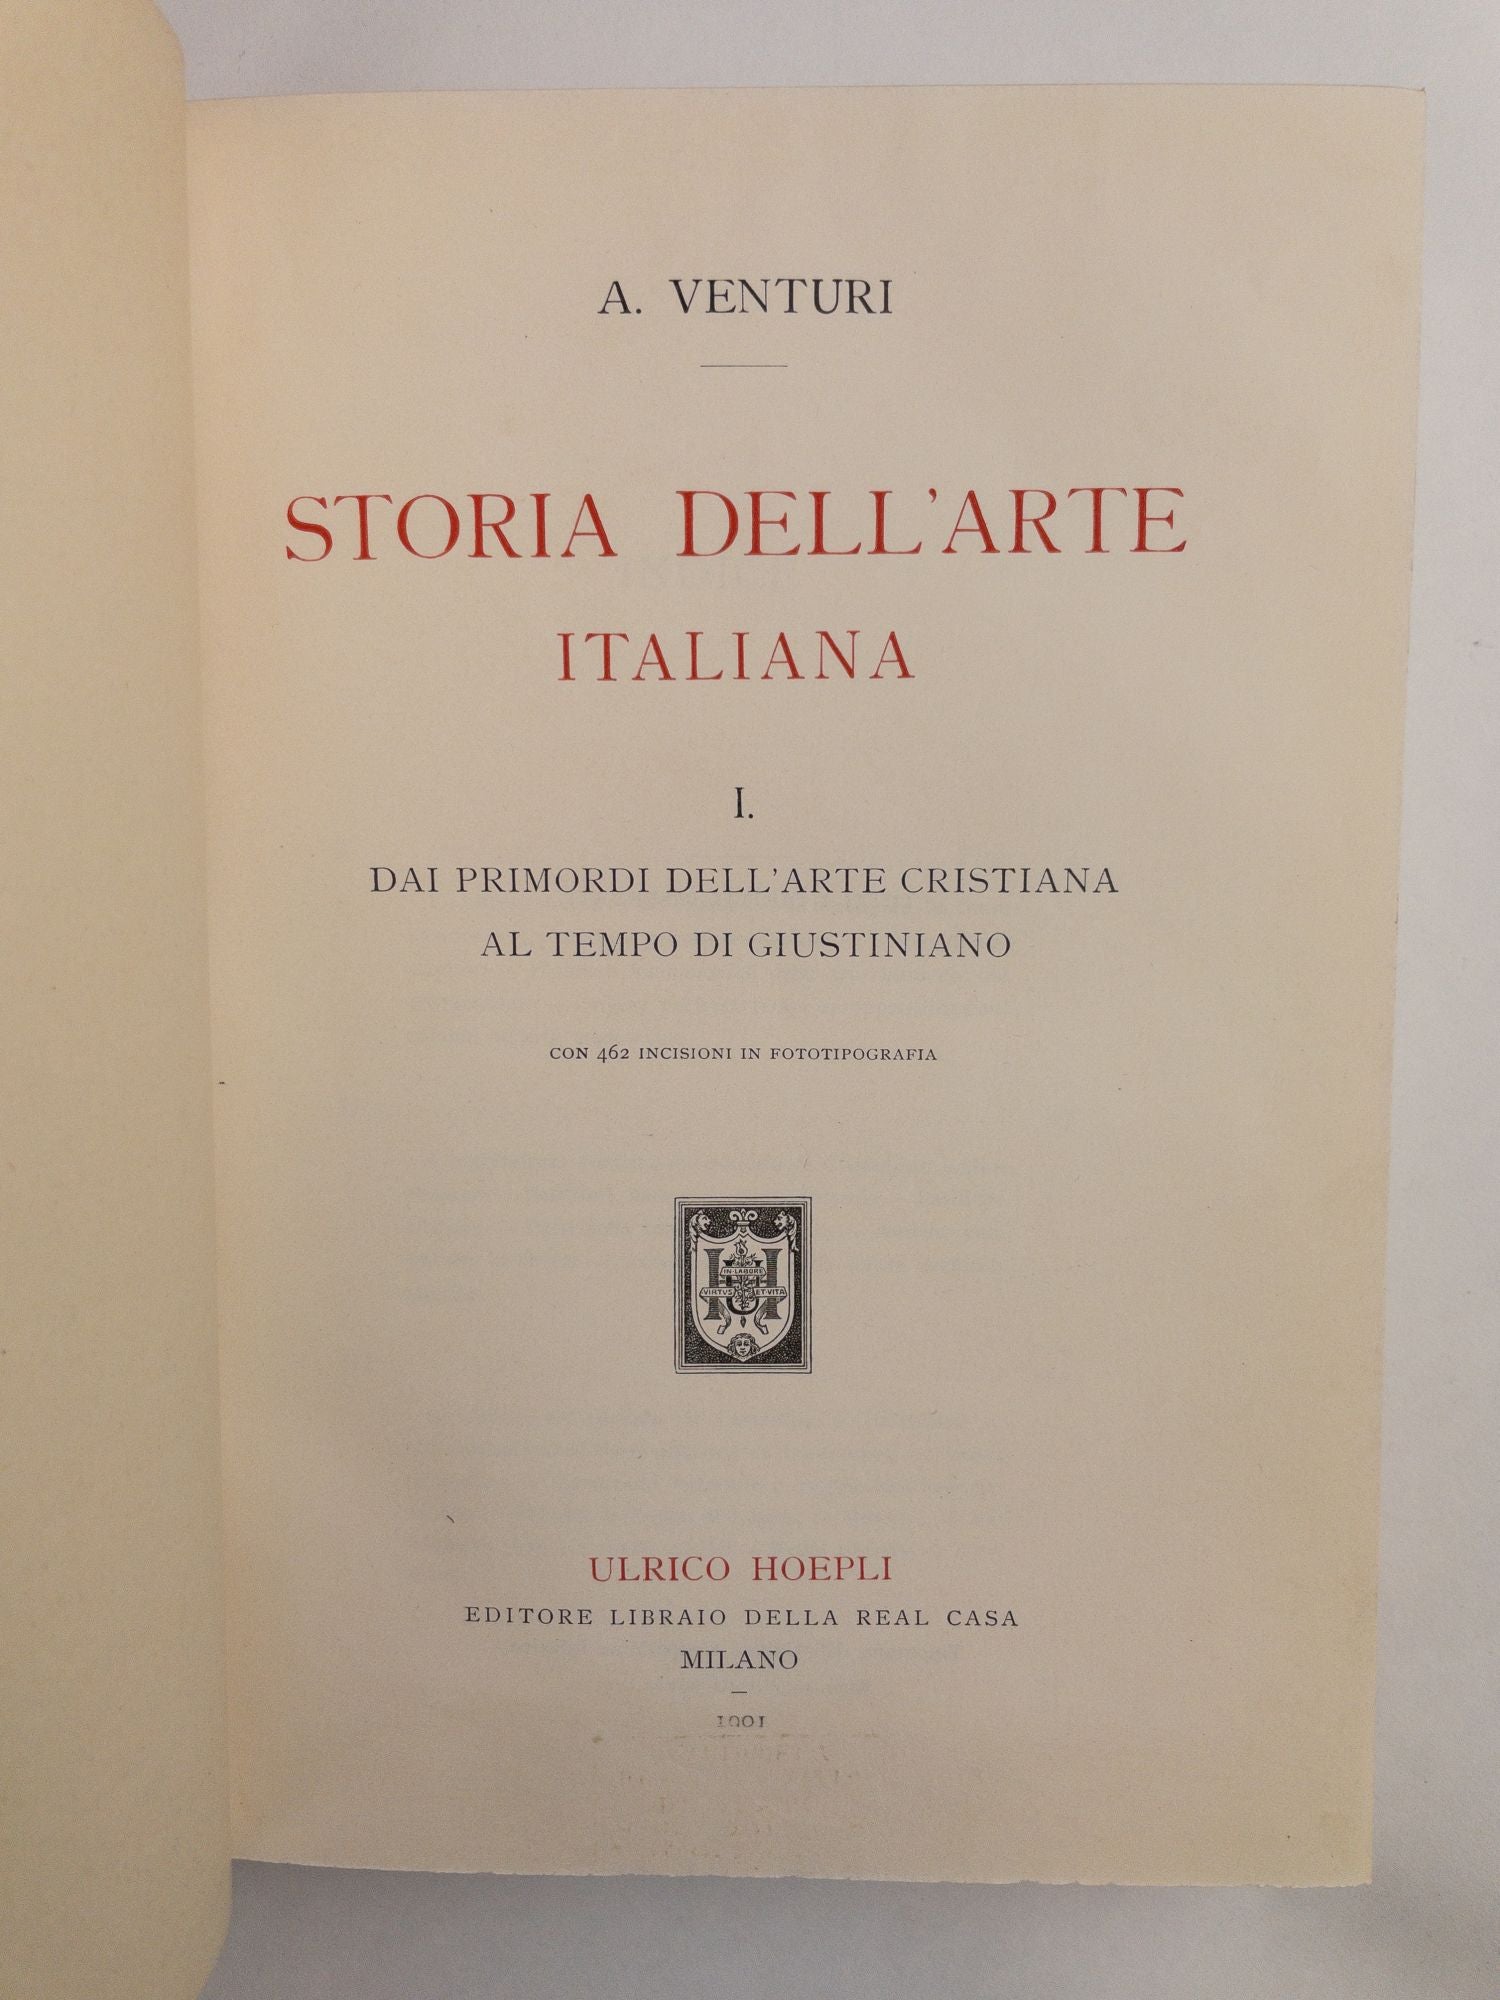 Product Image for STORIA DELL'ARTE ITALIANA [Eleven Books in Twenty Five Volumes]